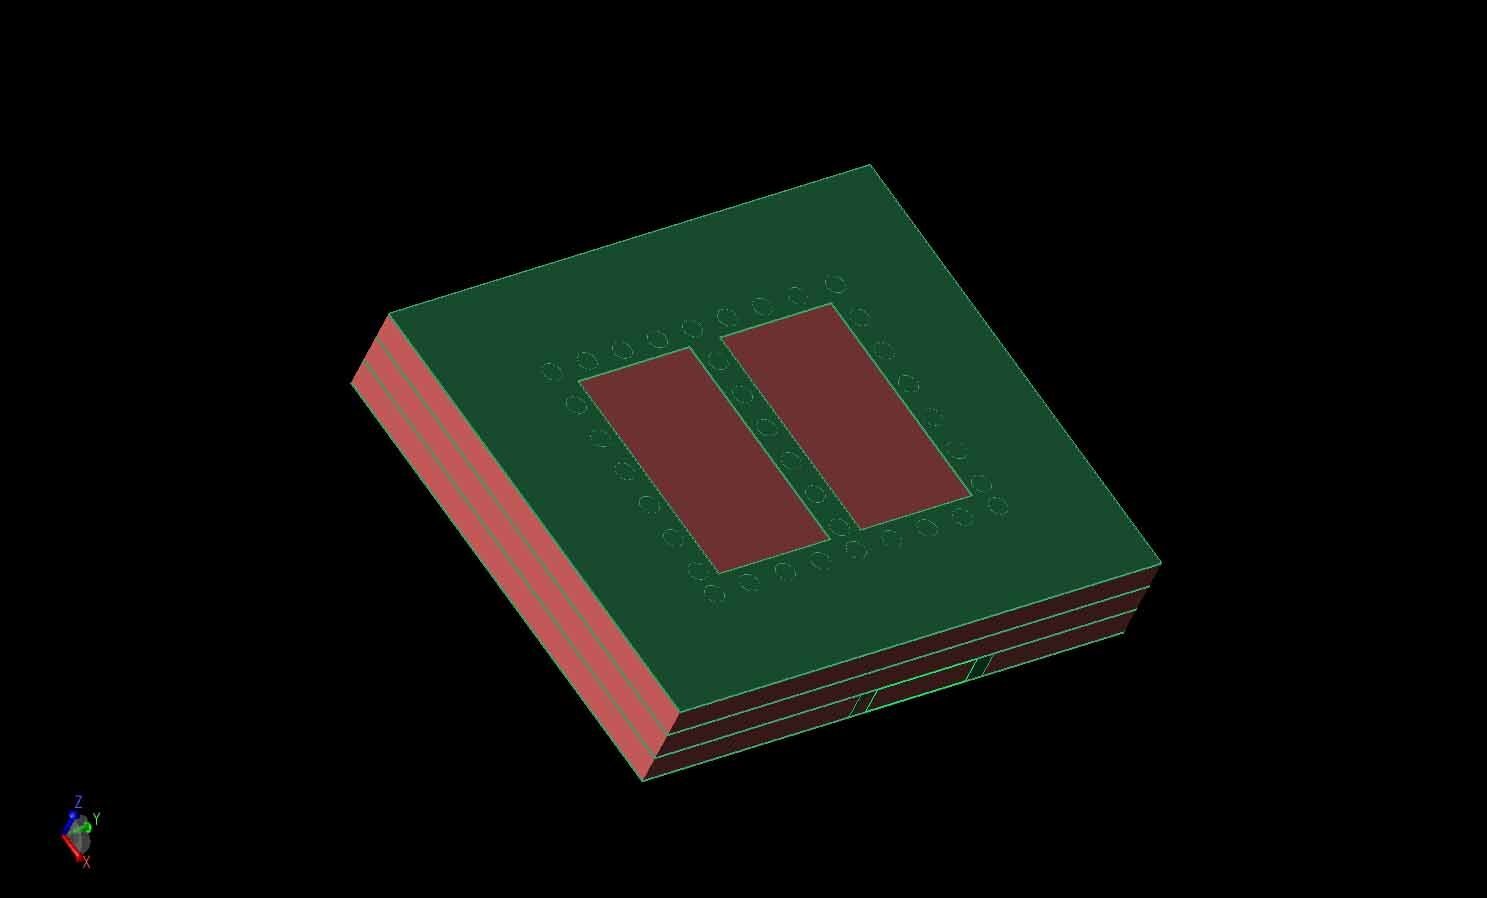 Bild 1: Ein dreidimensionales CAD-Rendering des SIC-angeregten 2x2-Antennenelements ist mit Metallschichten in grün und LTCC-Schichten in rot dargestellt.